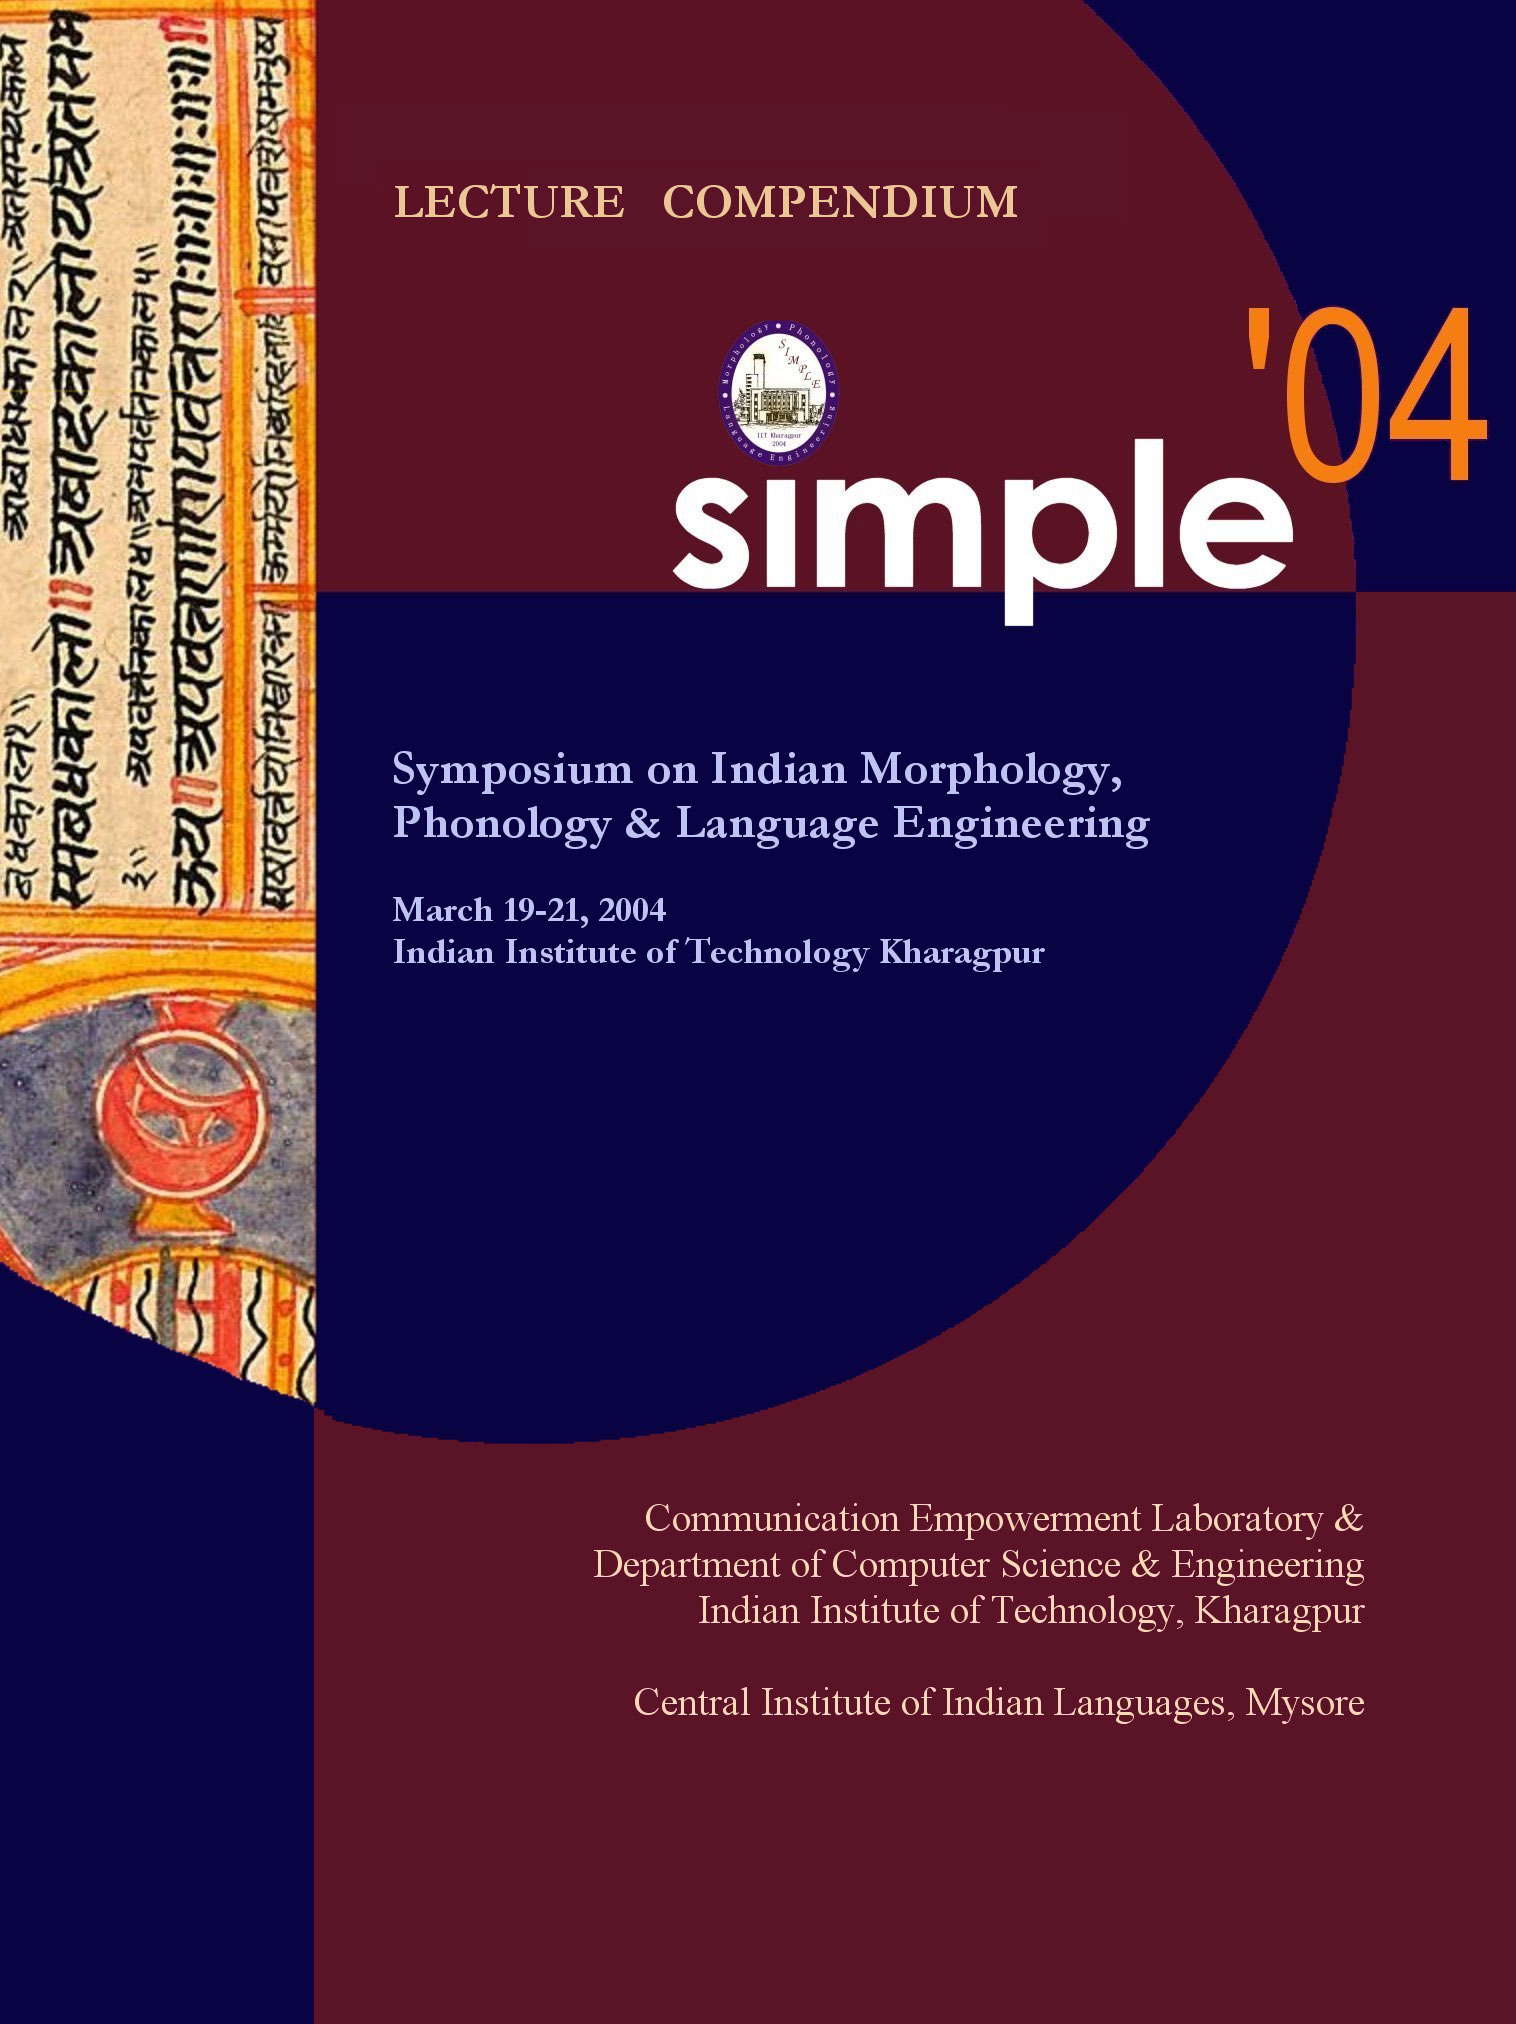 Symposium on Indian Morphology,Phonology & Language Engineering